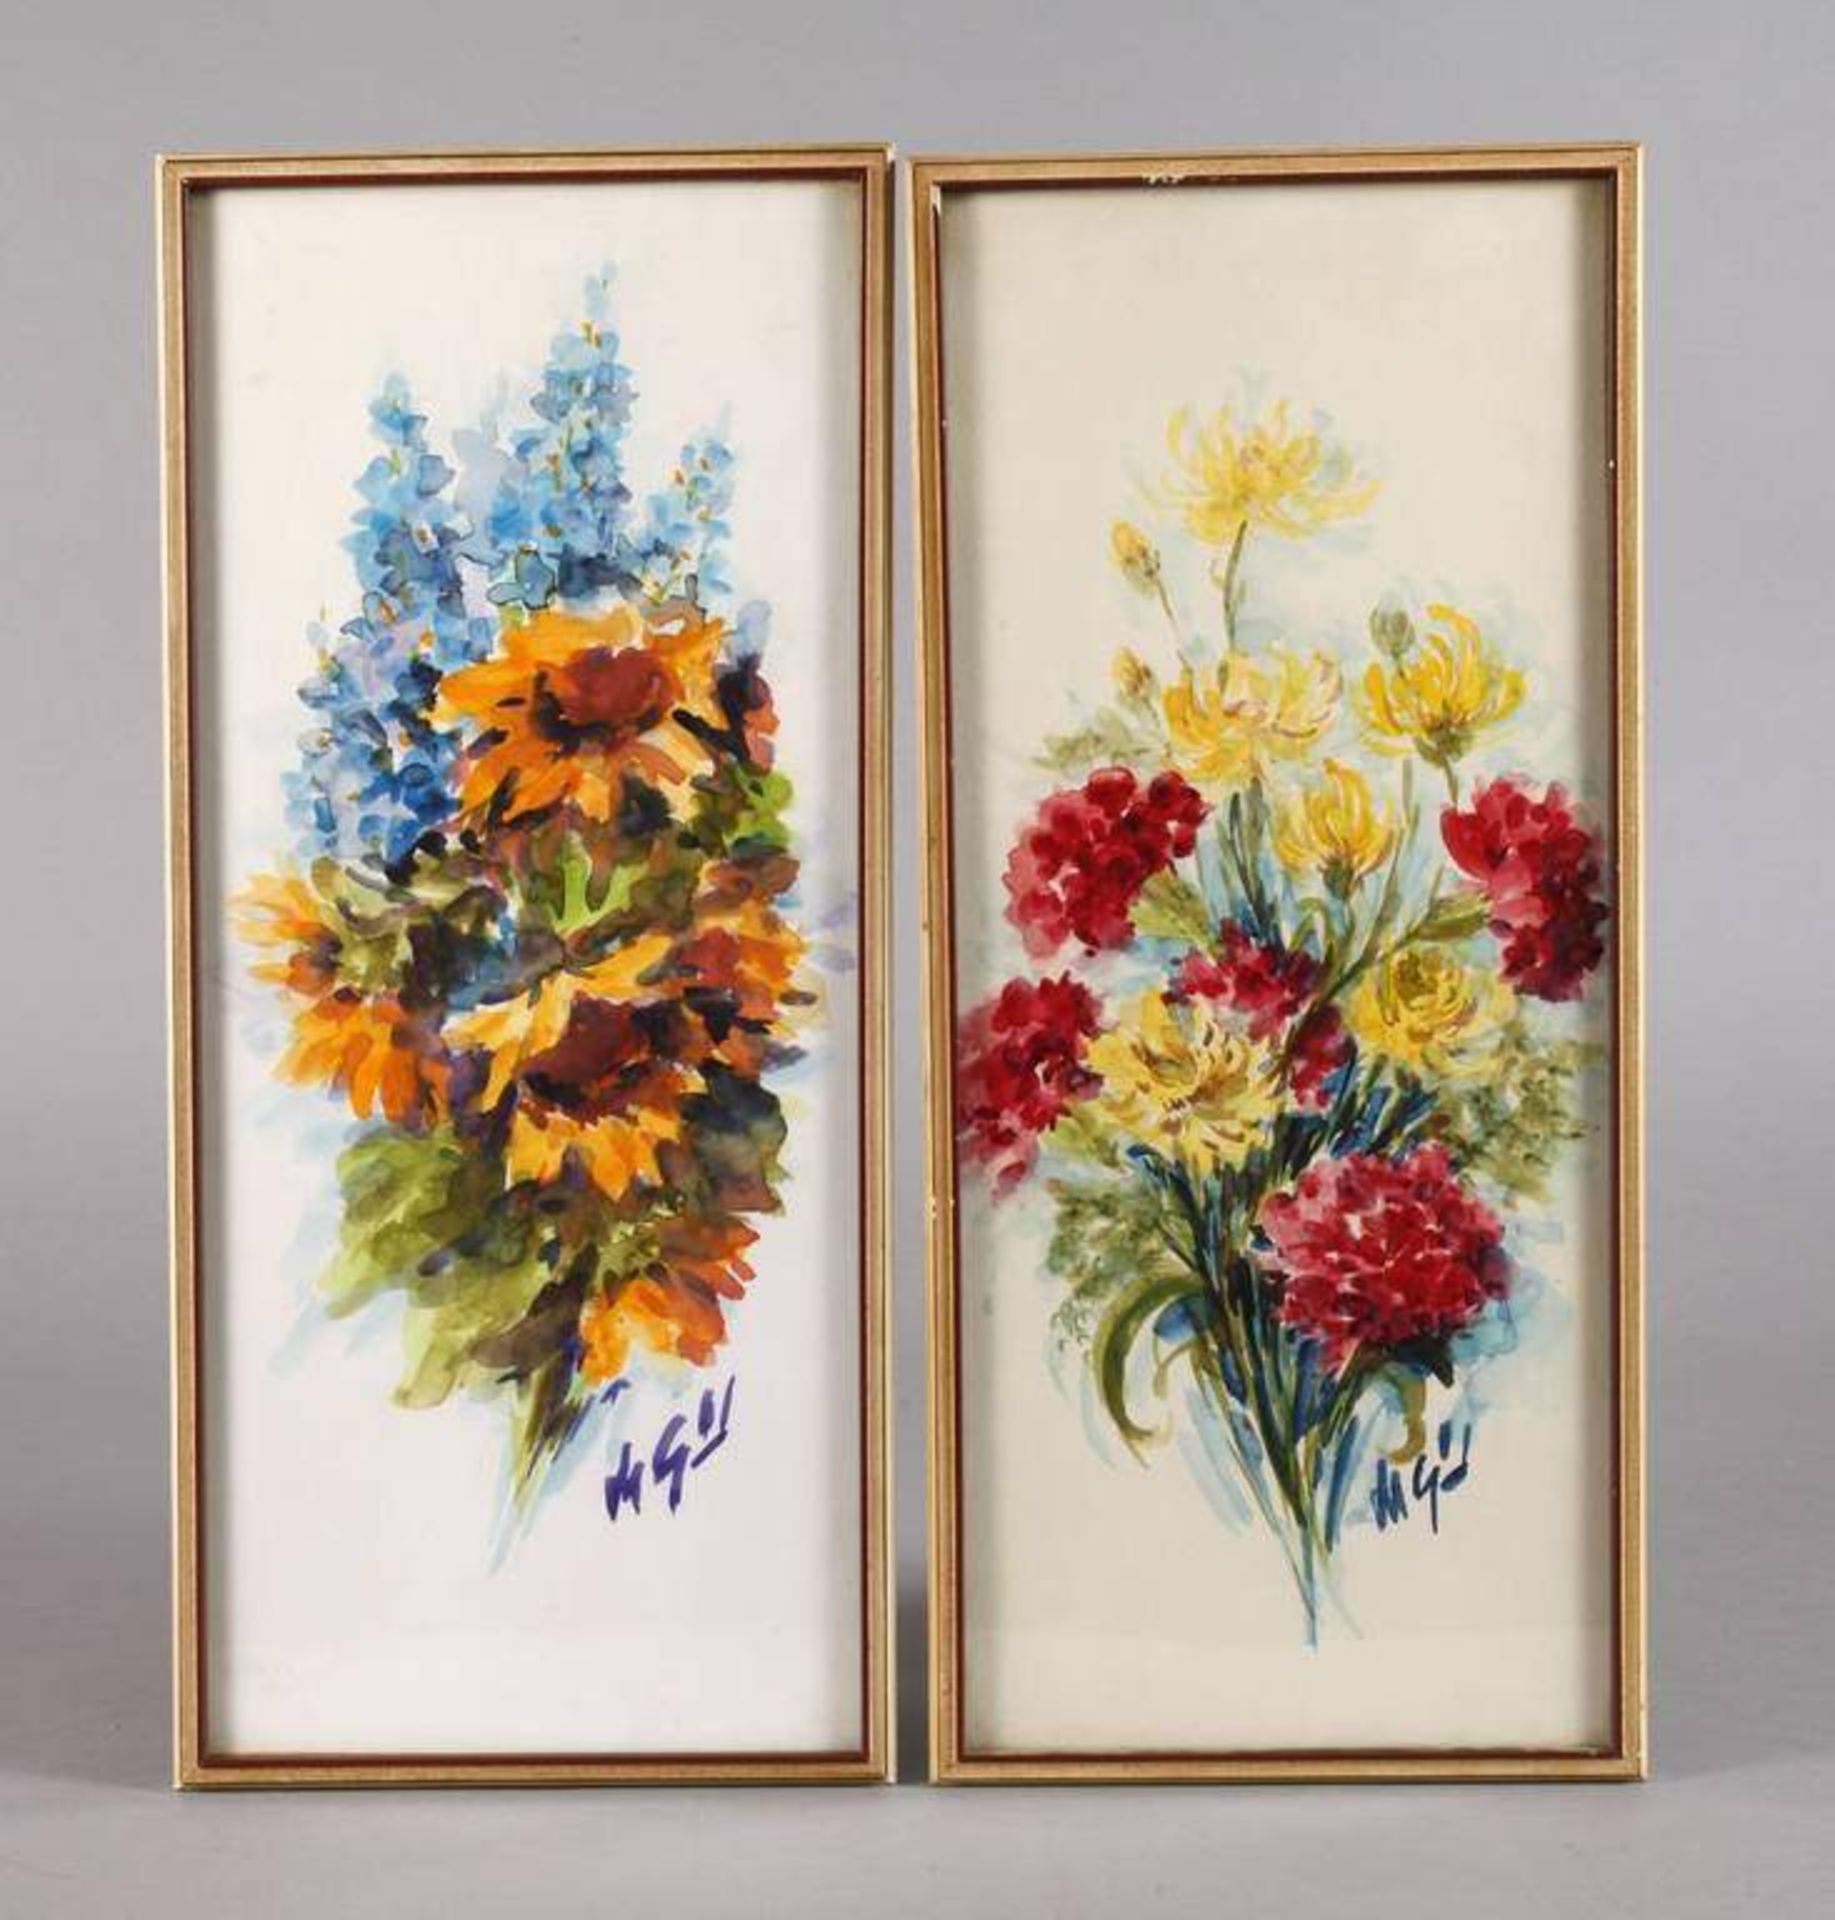 Martin Grünert, Paar Blumenstillleben gekonnte Darstellung von Sommerblumenarrangements in